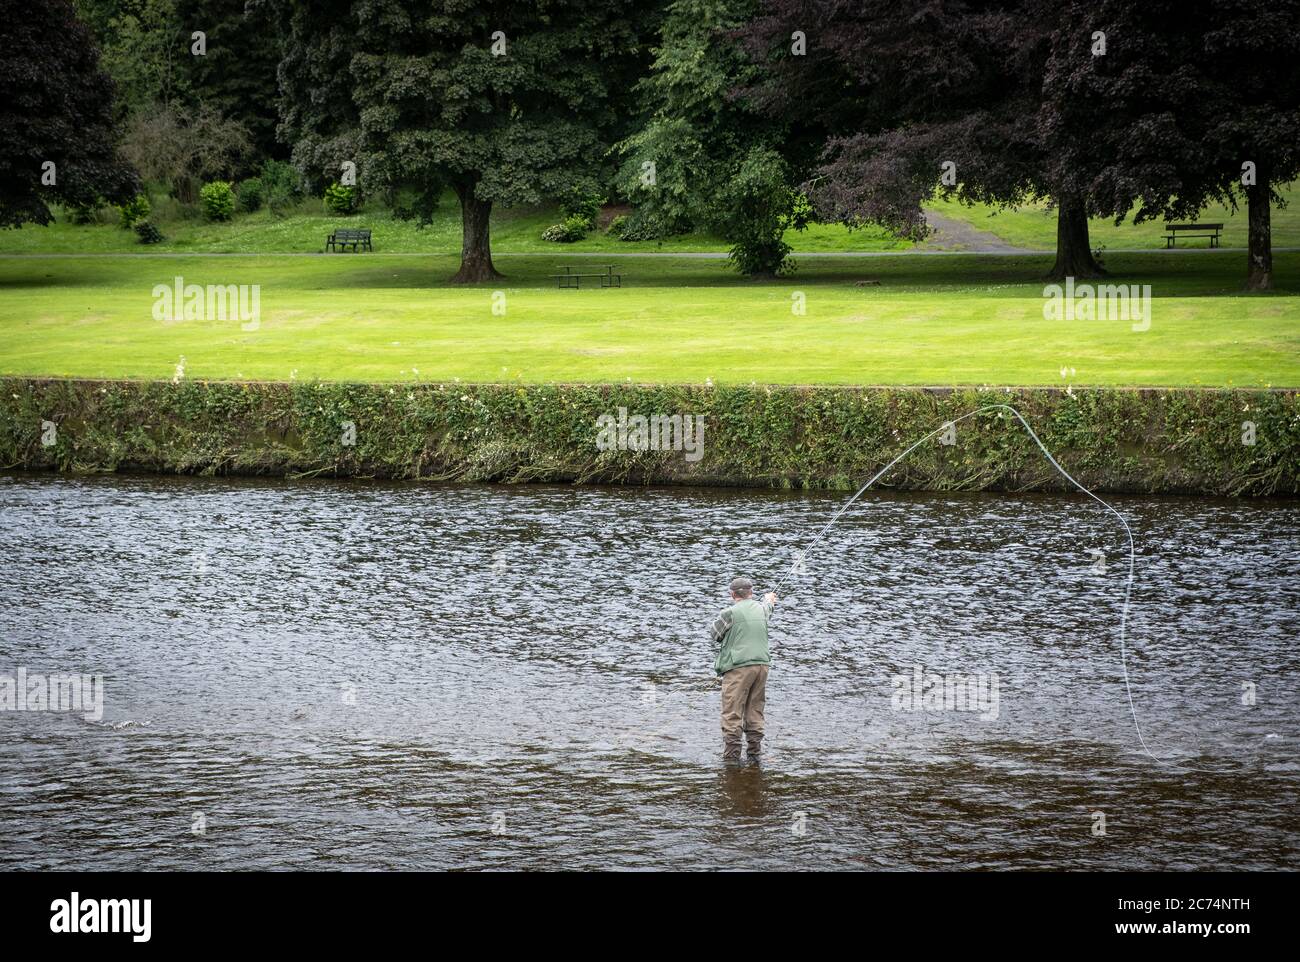 Juli 2020, Dumfries. Da die covid-Pandemiebeschränkungen lockern, kann man einen Mann beim Fischen im Fluss Nith, Dumfries, Schottland, beobachten. Stockfoto